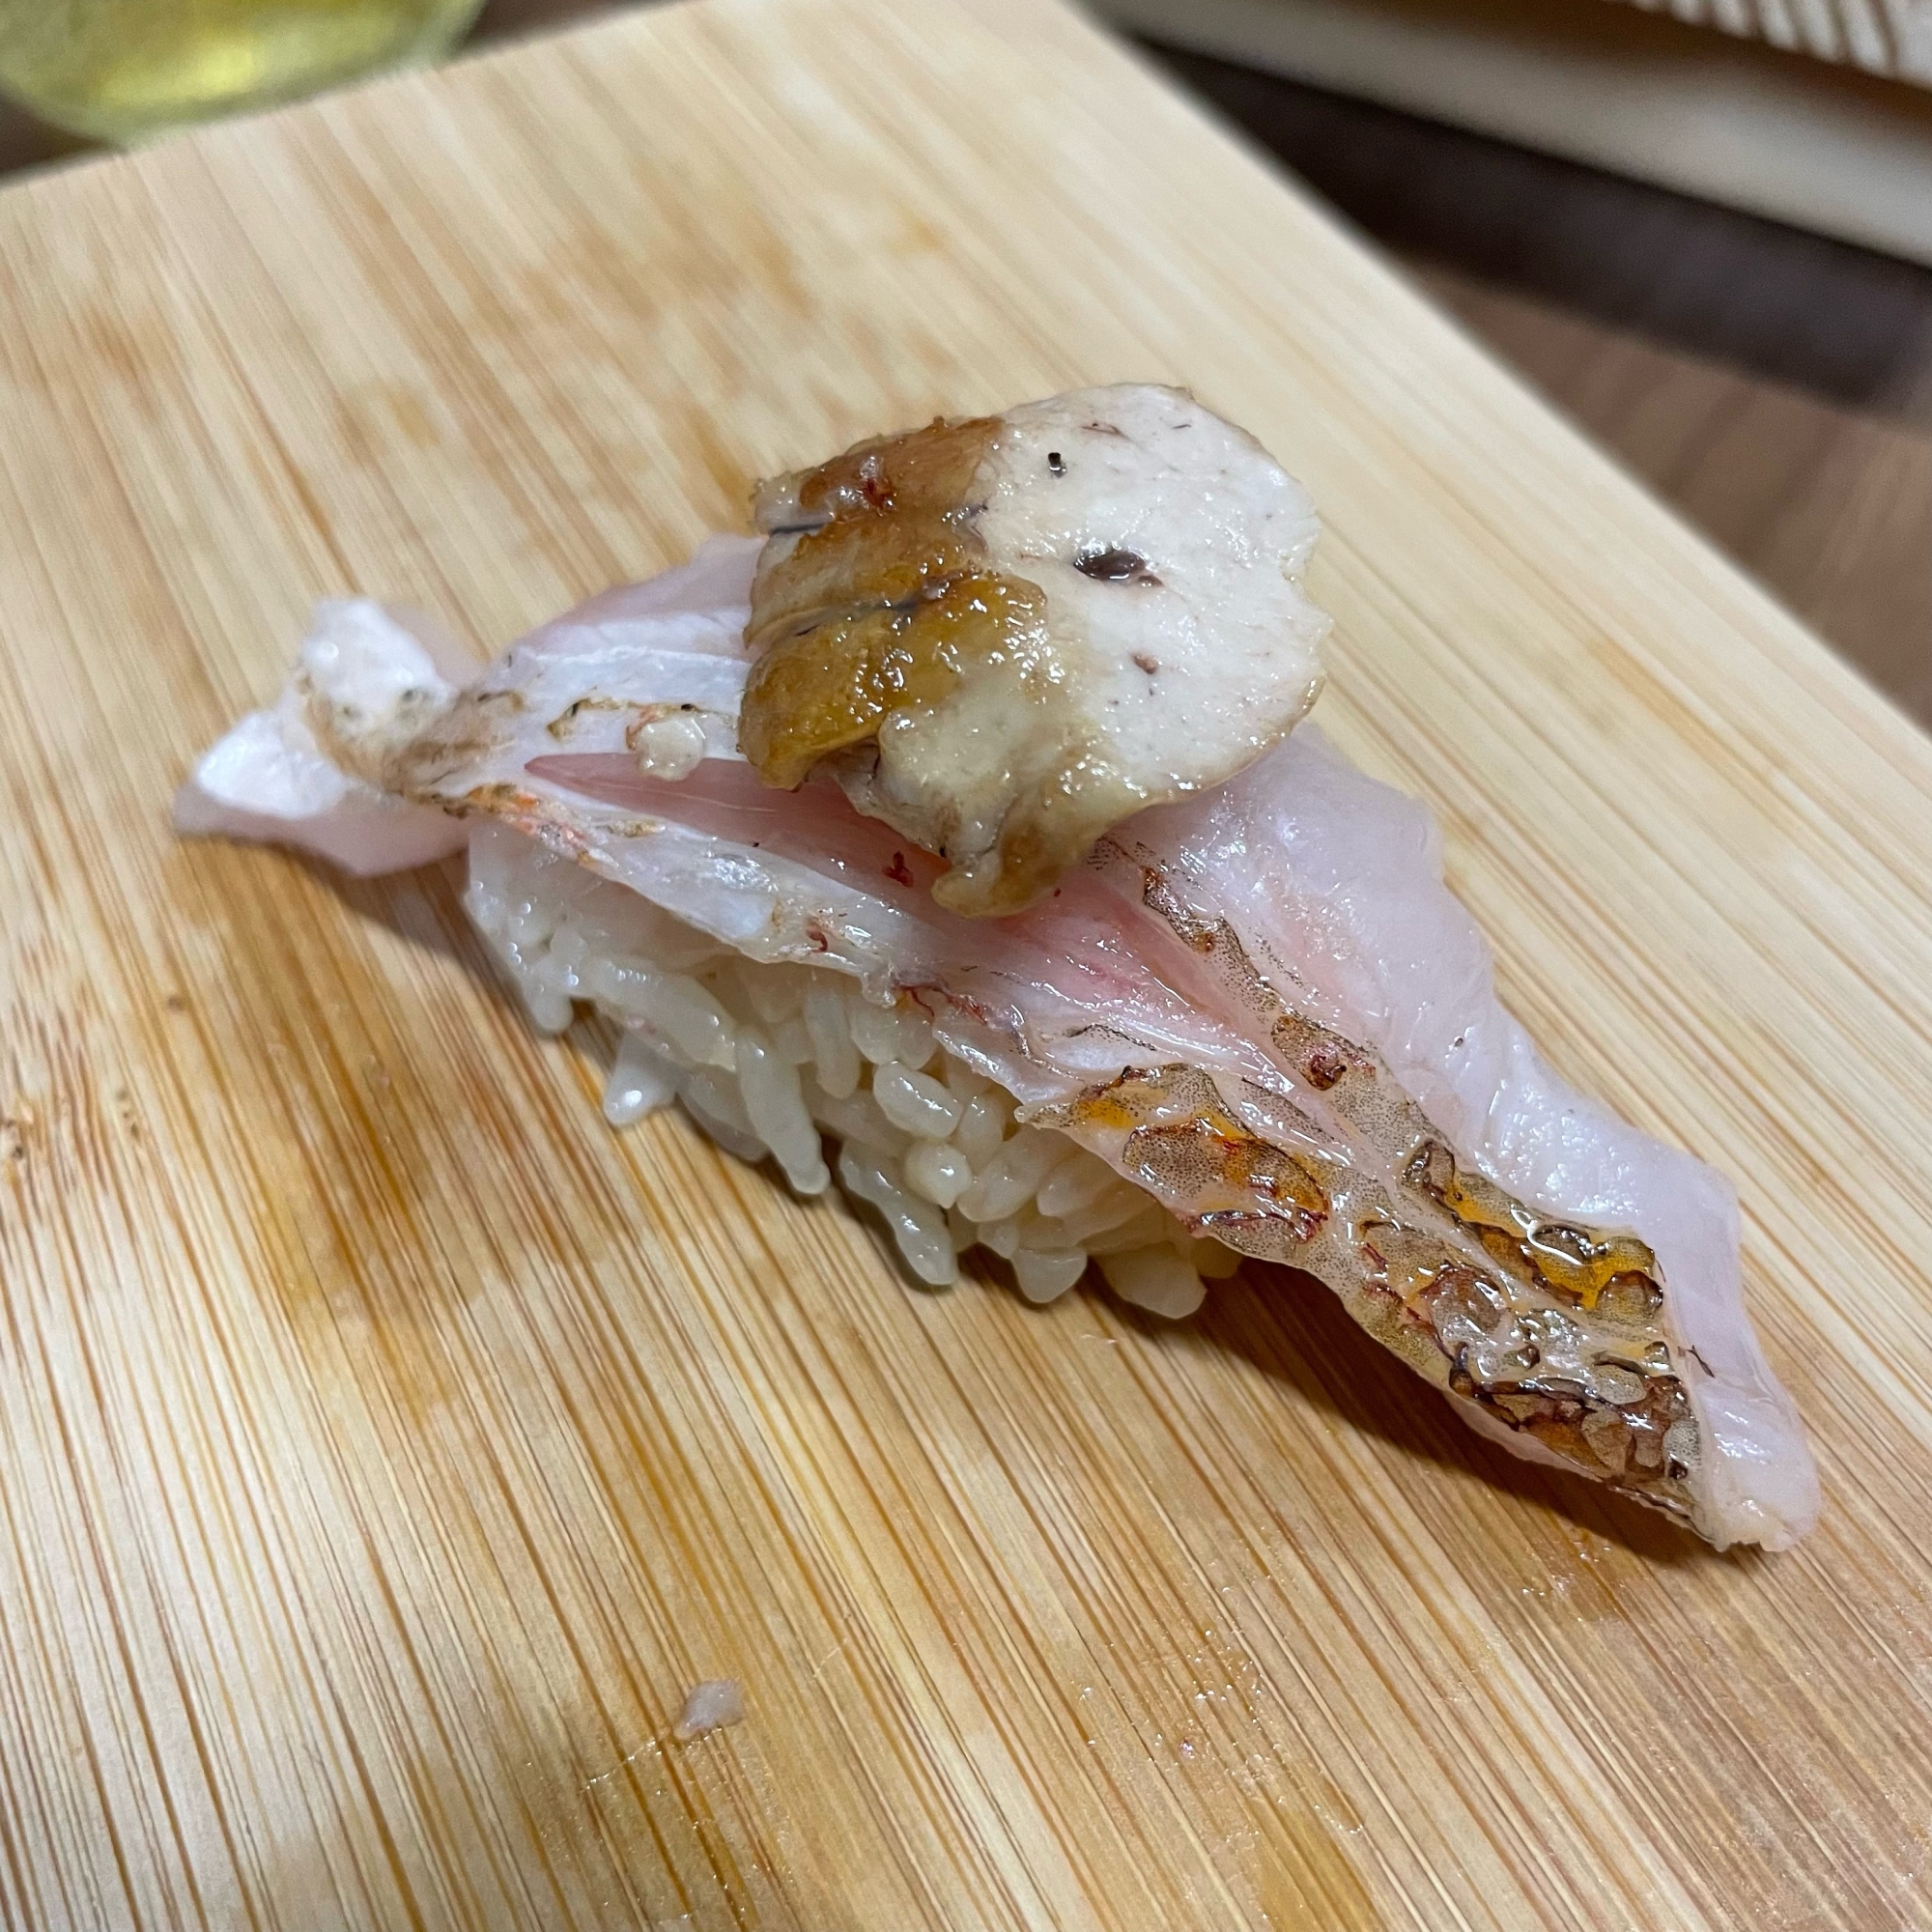 アカムツ/クロムツの炙り寿司